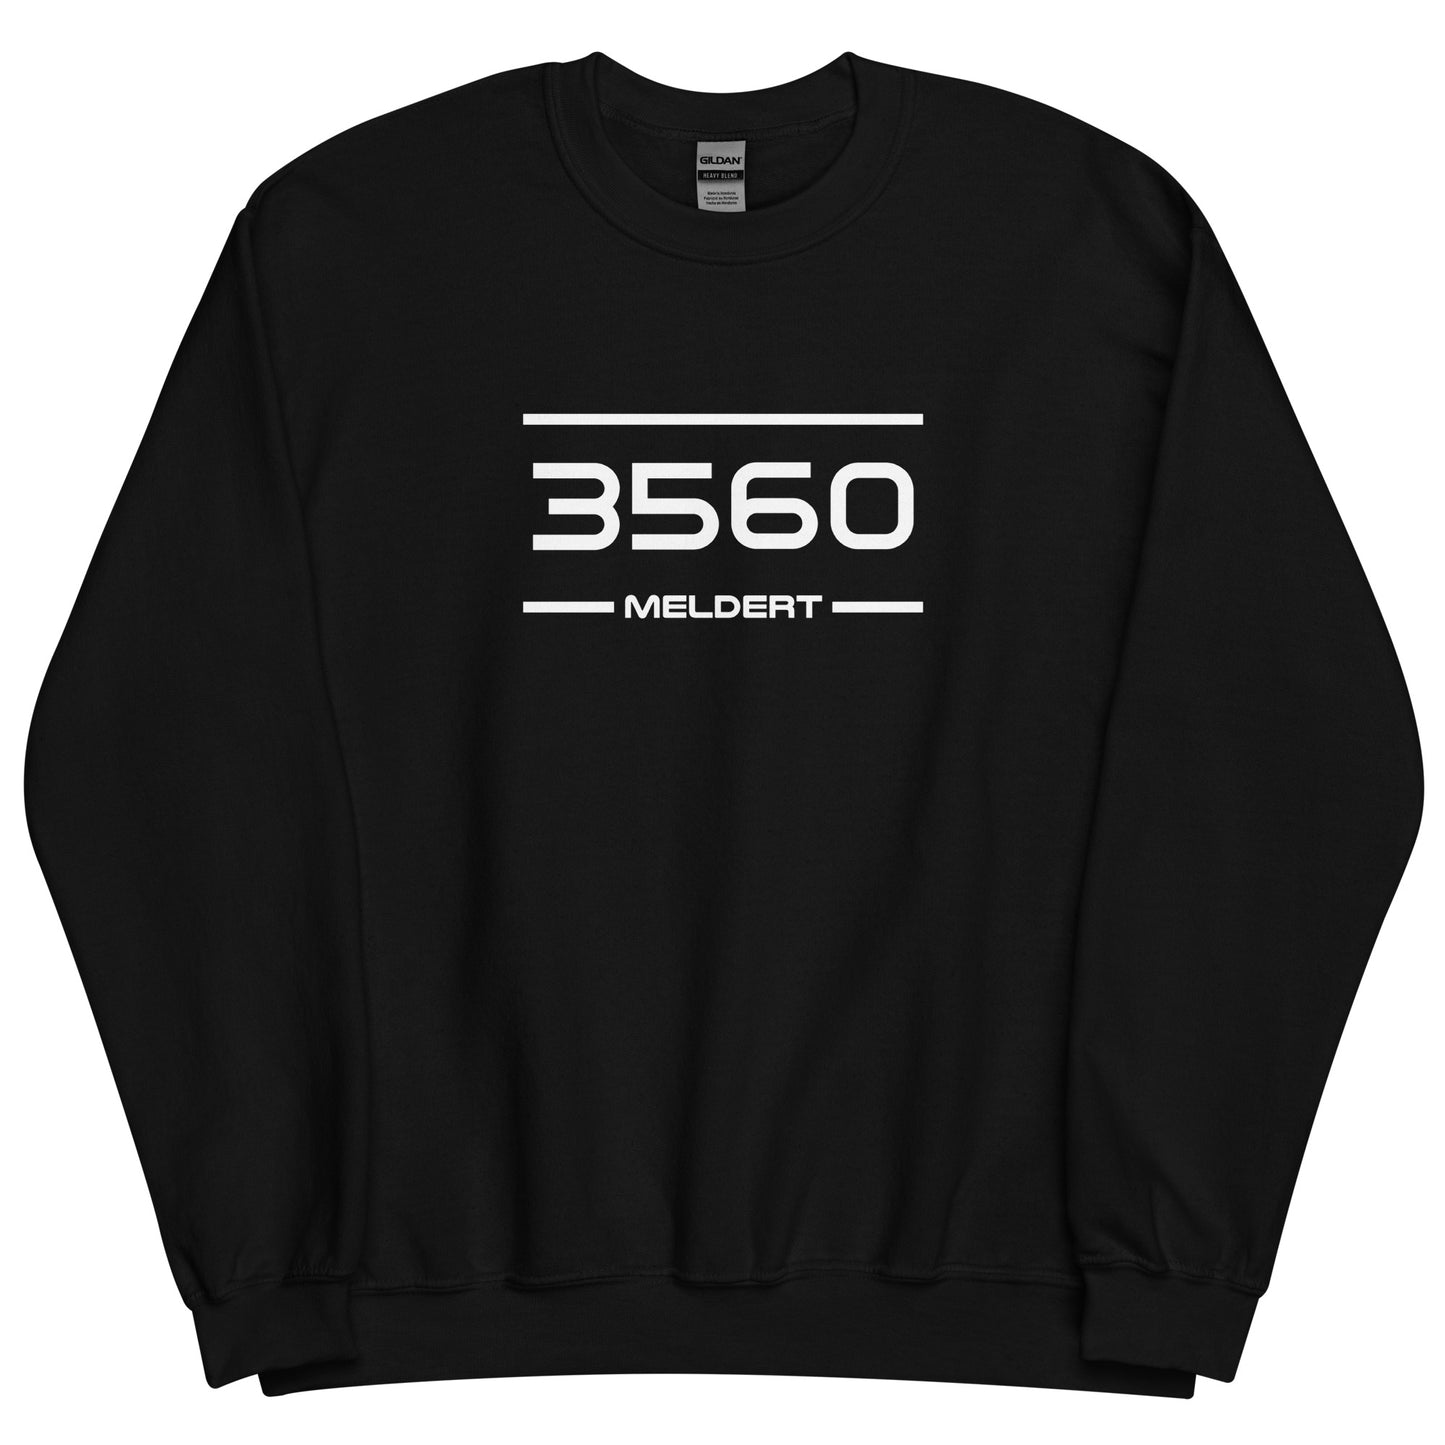 Sweater - 3560 - Meldert (M/V)